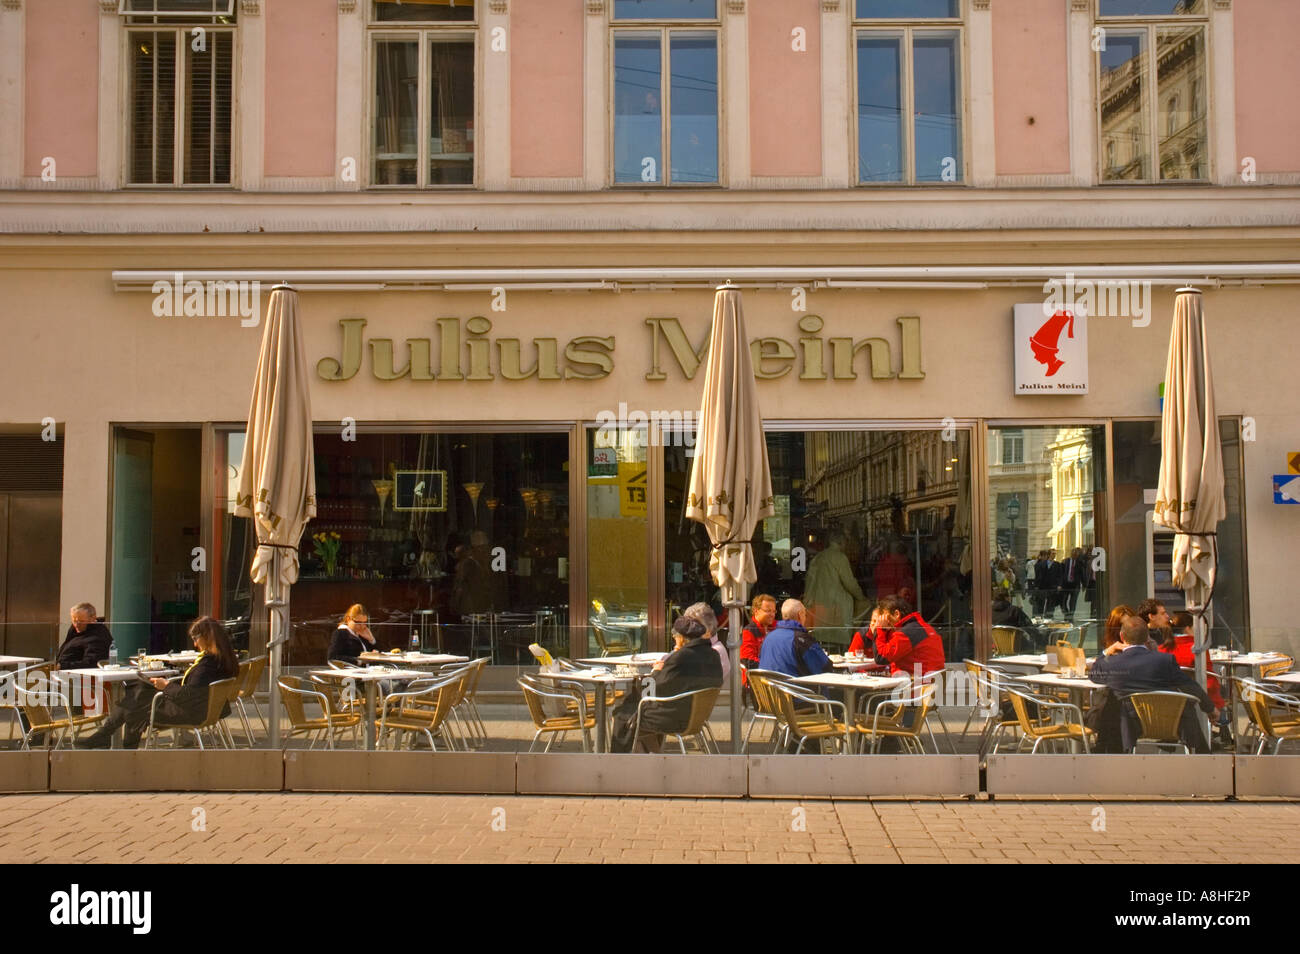 Julius Meinl cafe in Graben central Vienna Austria EU Stock Photo - Alamy